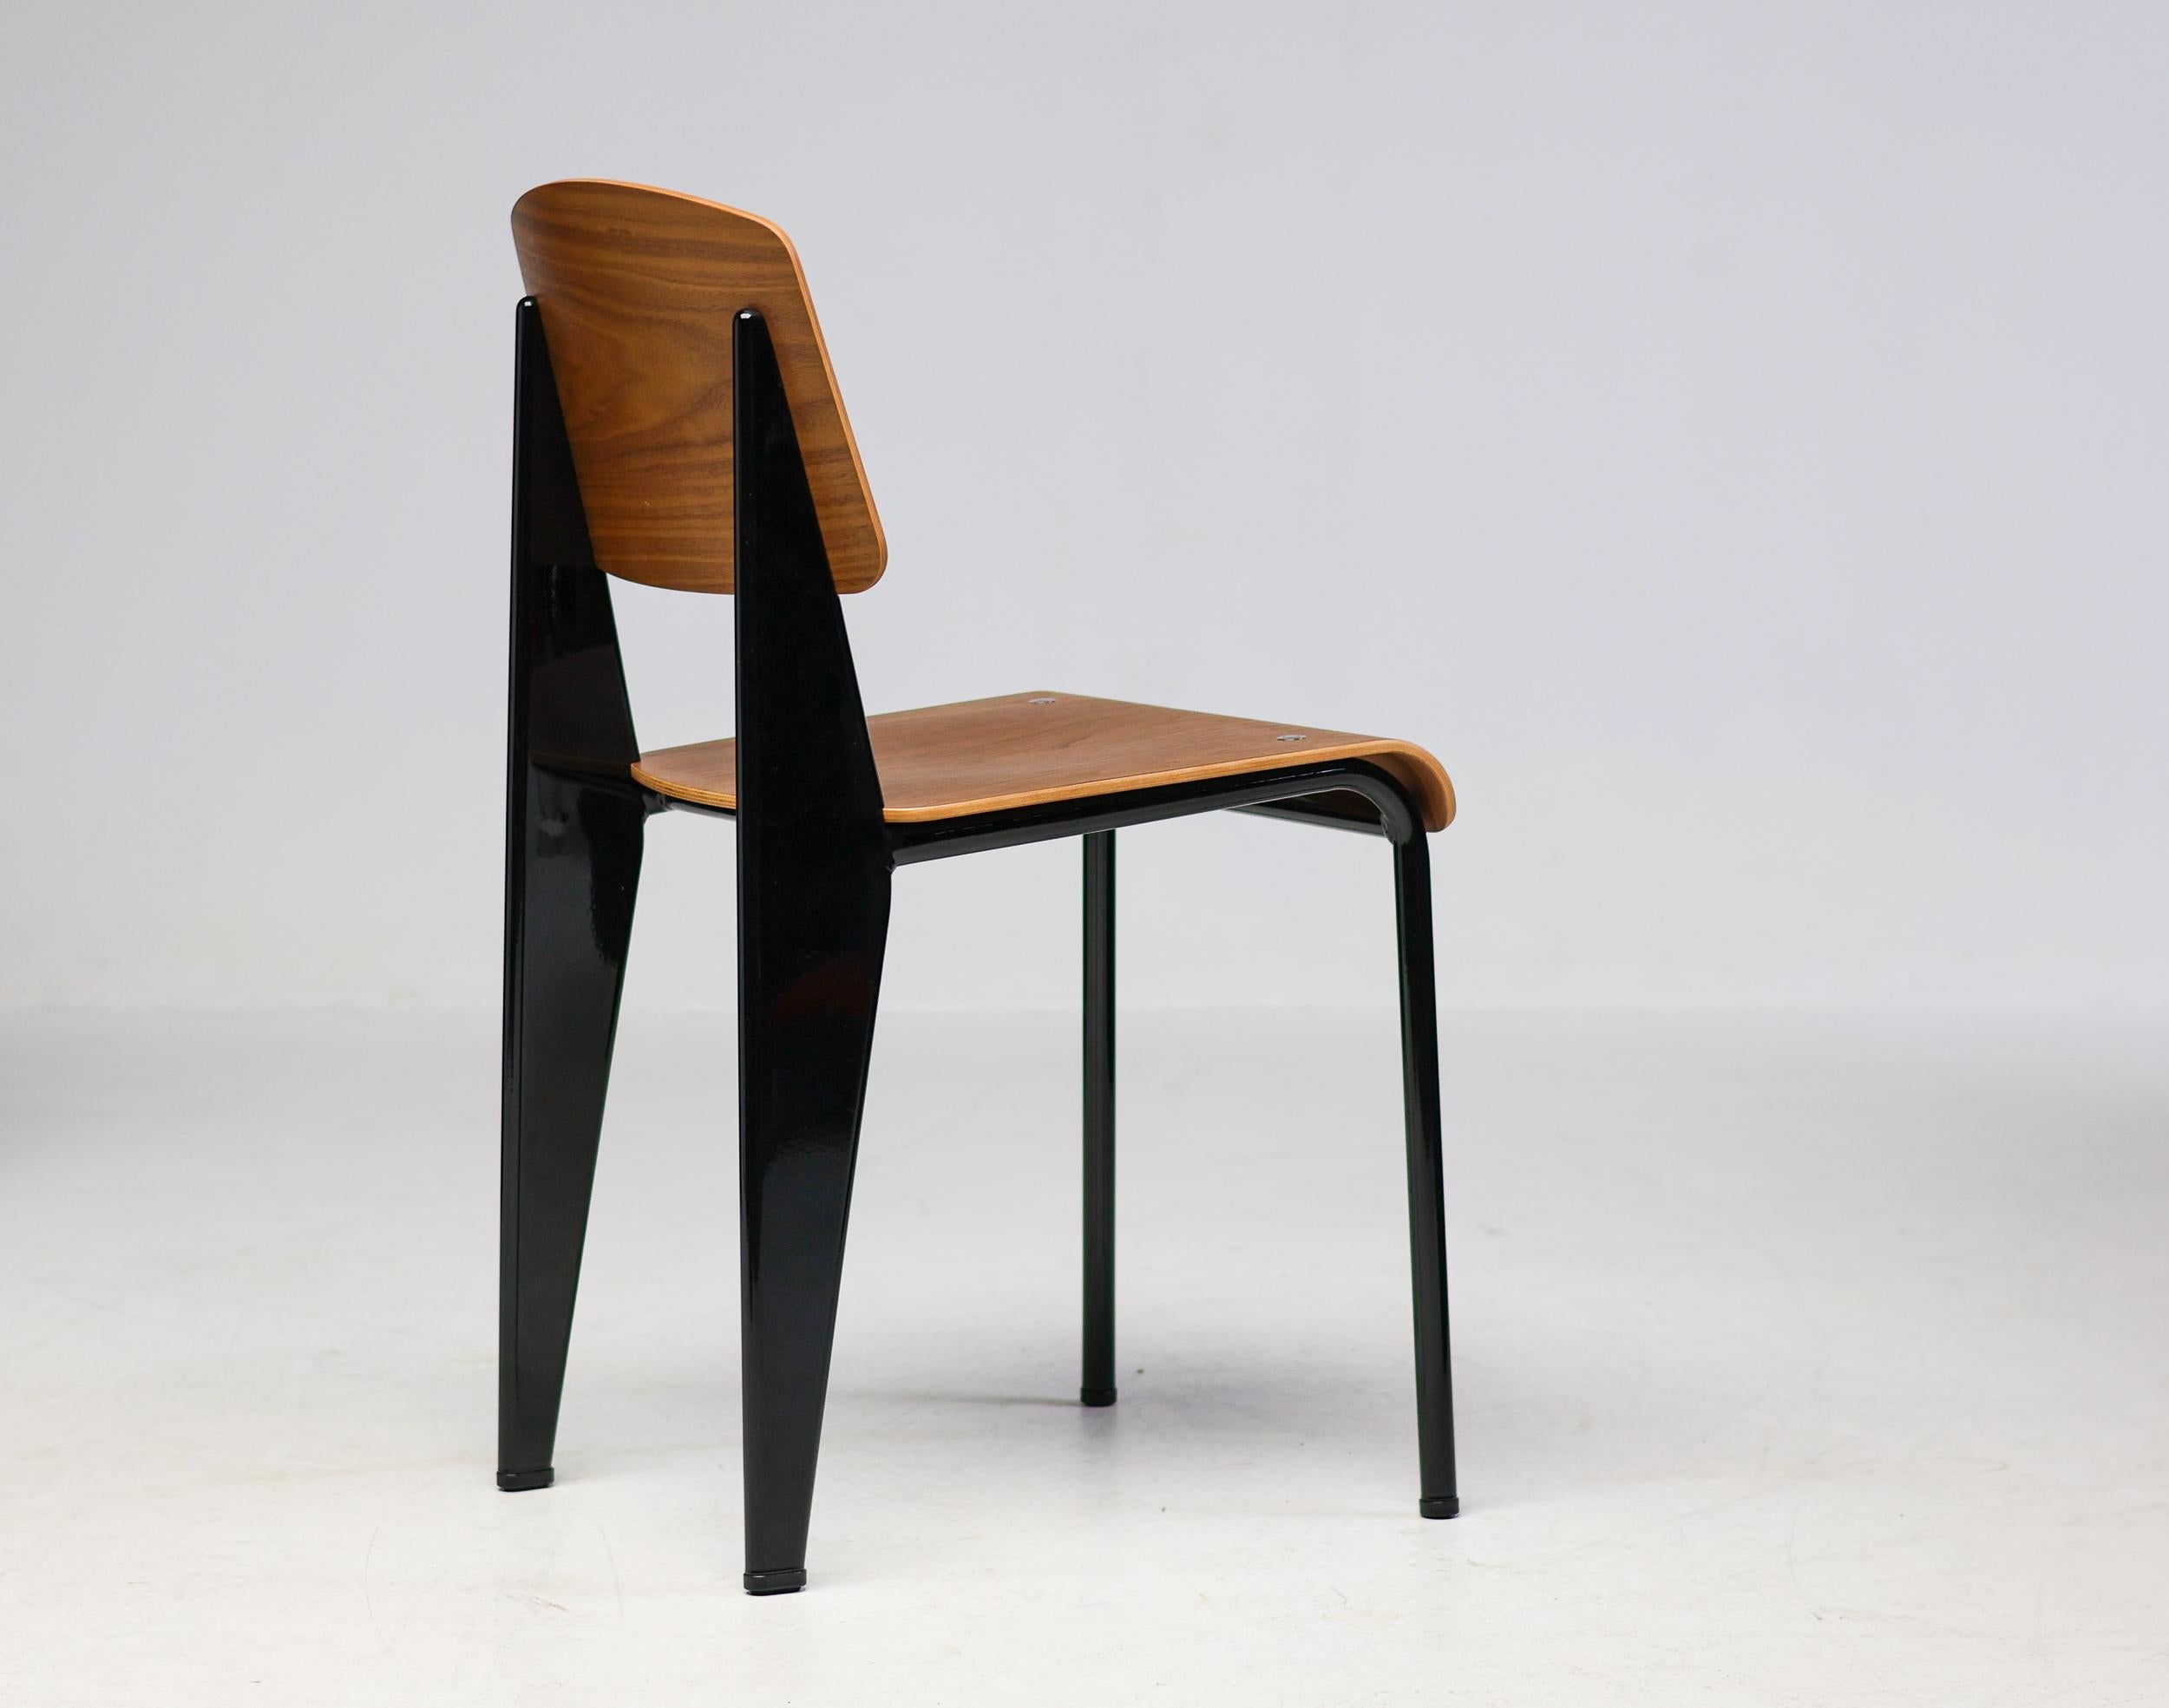 La chaise standard classique a été conçue à l'origine par Jean Prouvé en 1934.
Ce bel exemplaire est fabriqué en noyer avec un cadre en acier émaillé noir.
Marqué d'un label.

Jean Prouvé était un designer industriel et un architecte français qui a